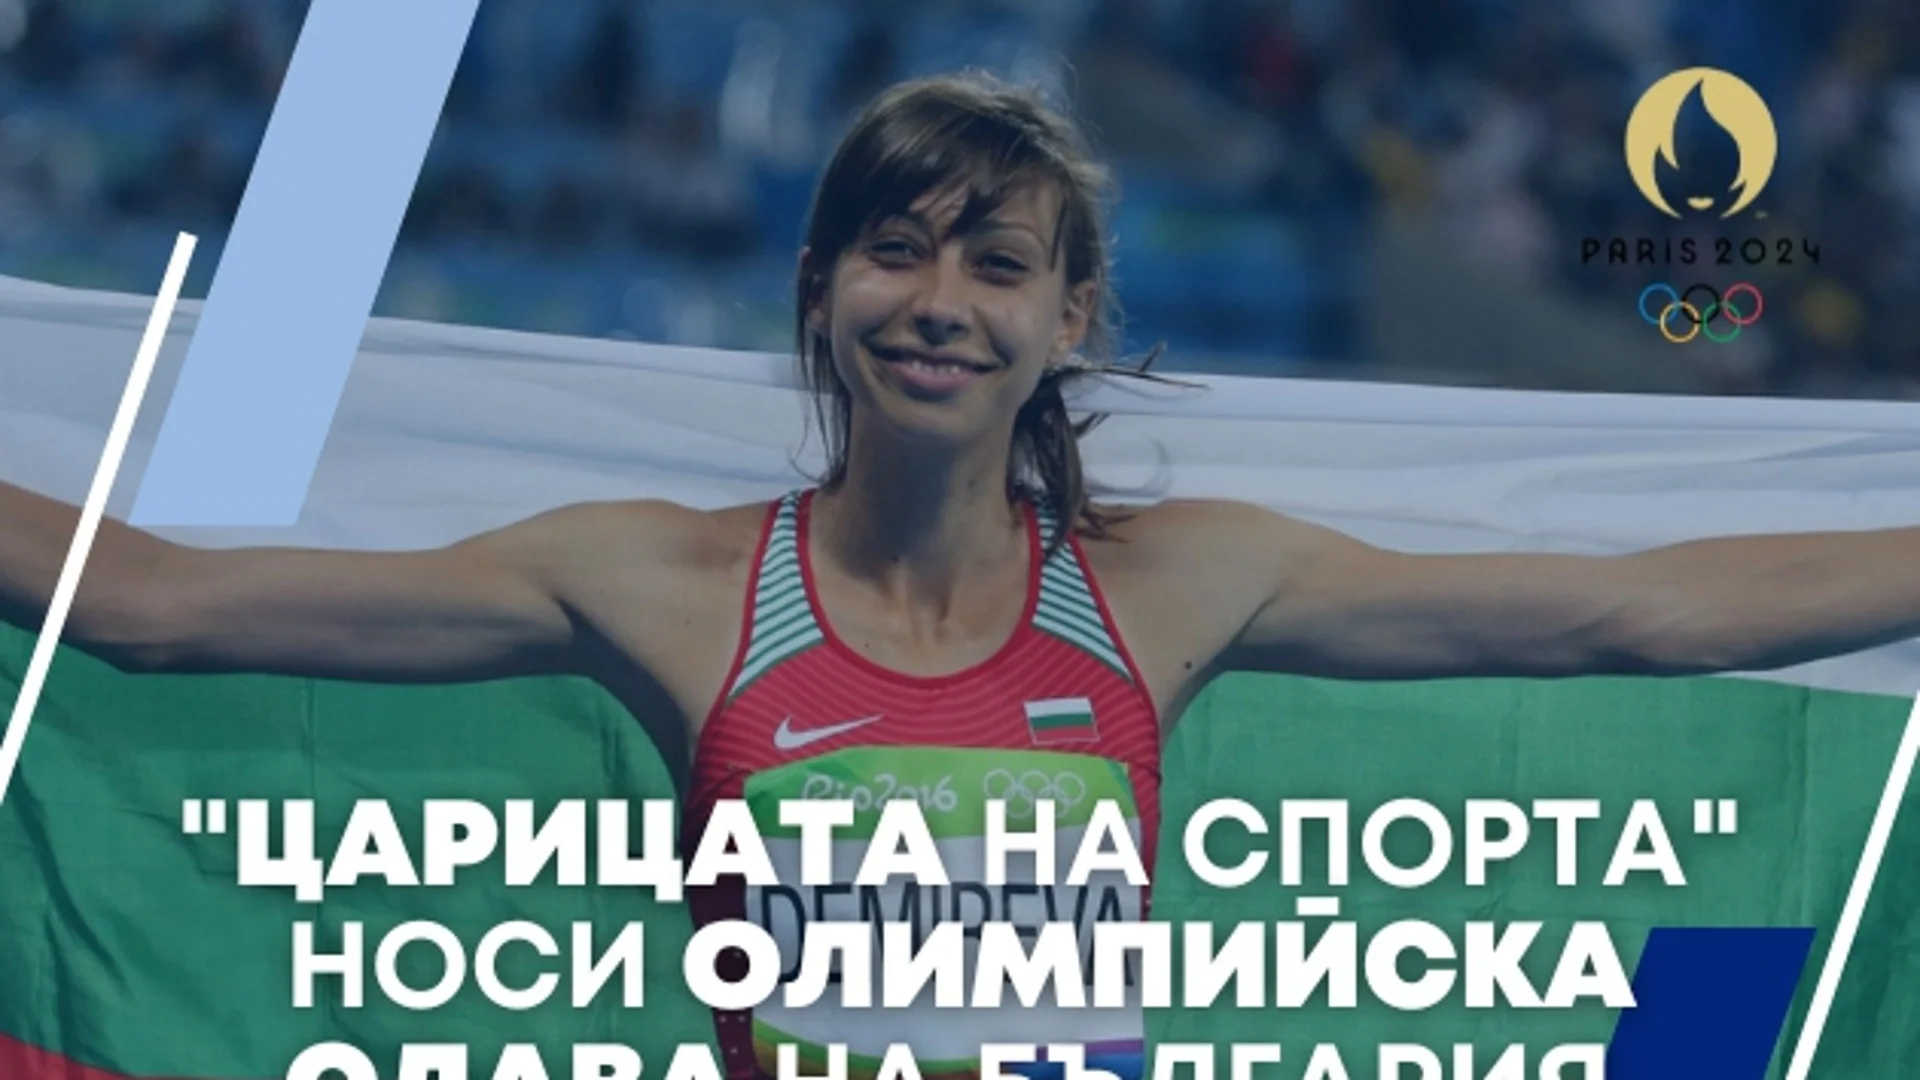 169 дни до Париж 2024: "Царицата на спорта" носи голяма олимпийска слава на България 